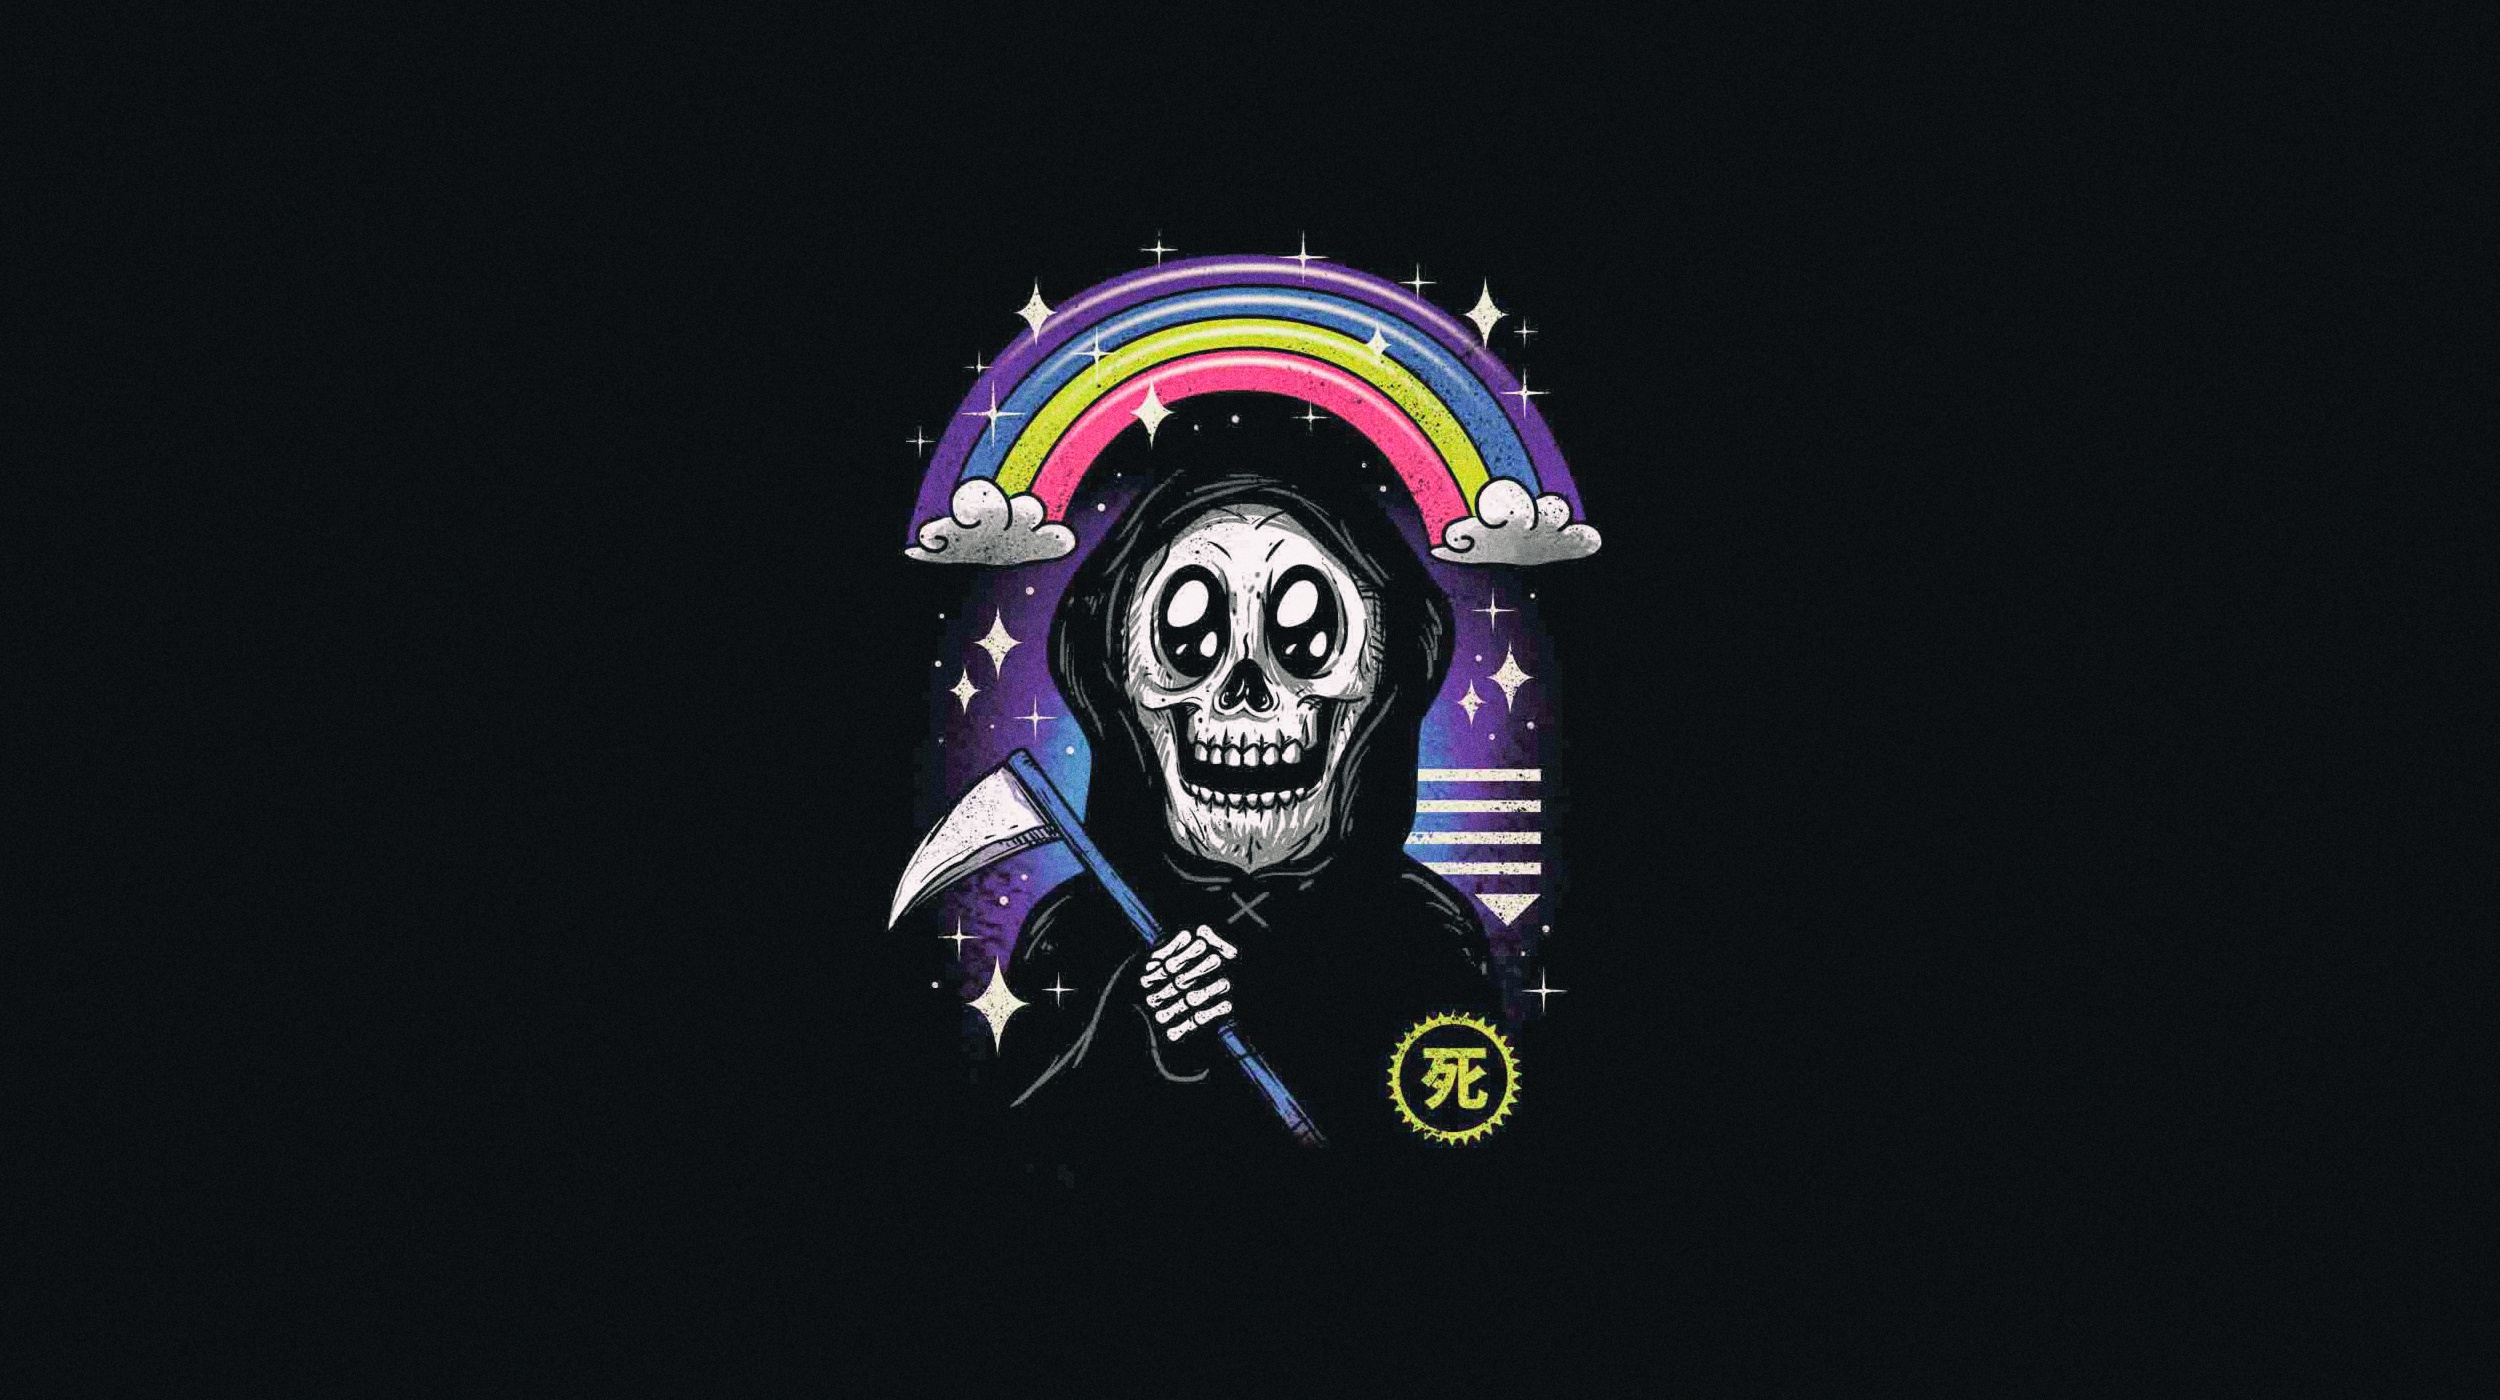 General 2500x1400 artwork rainbows Grim Reaper skull